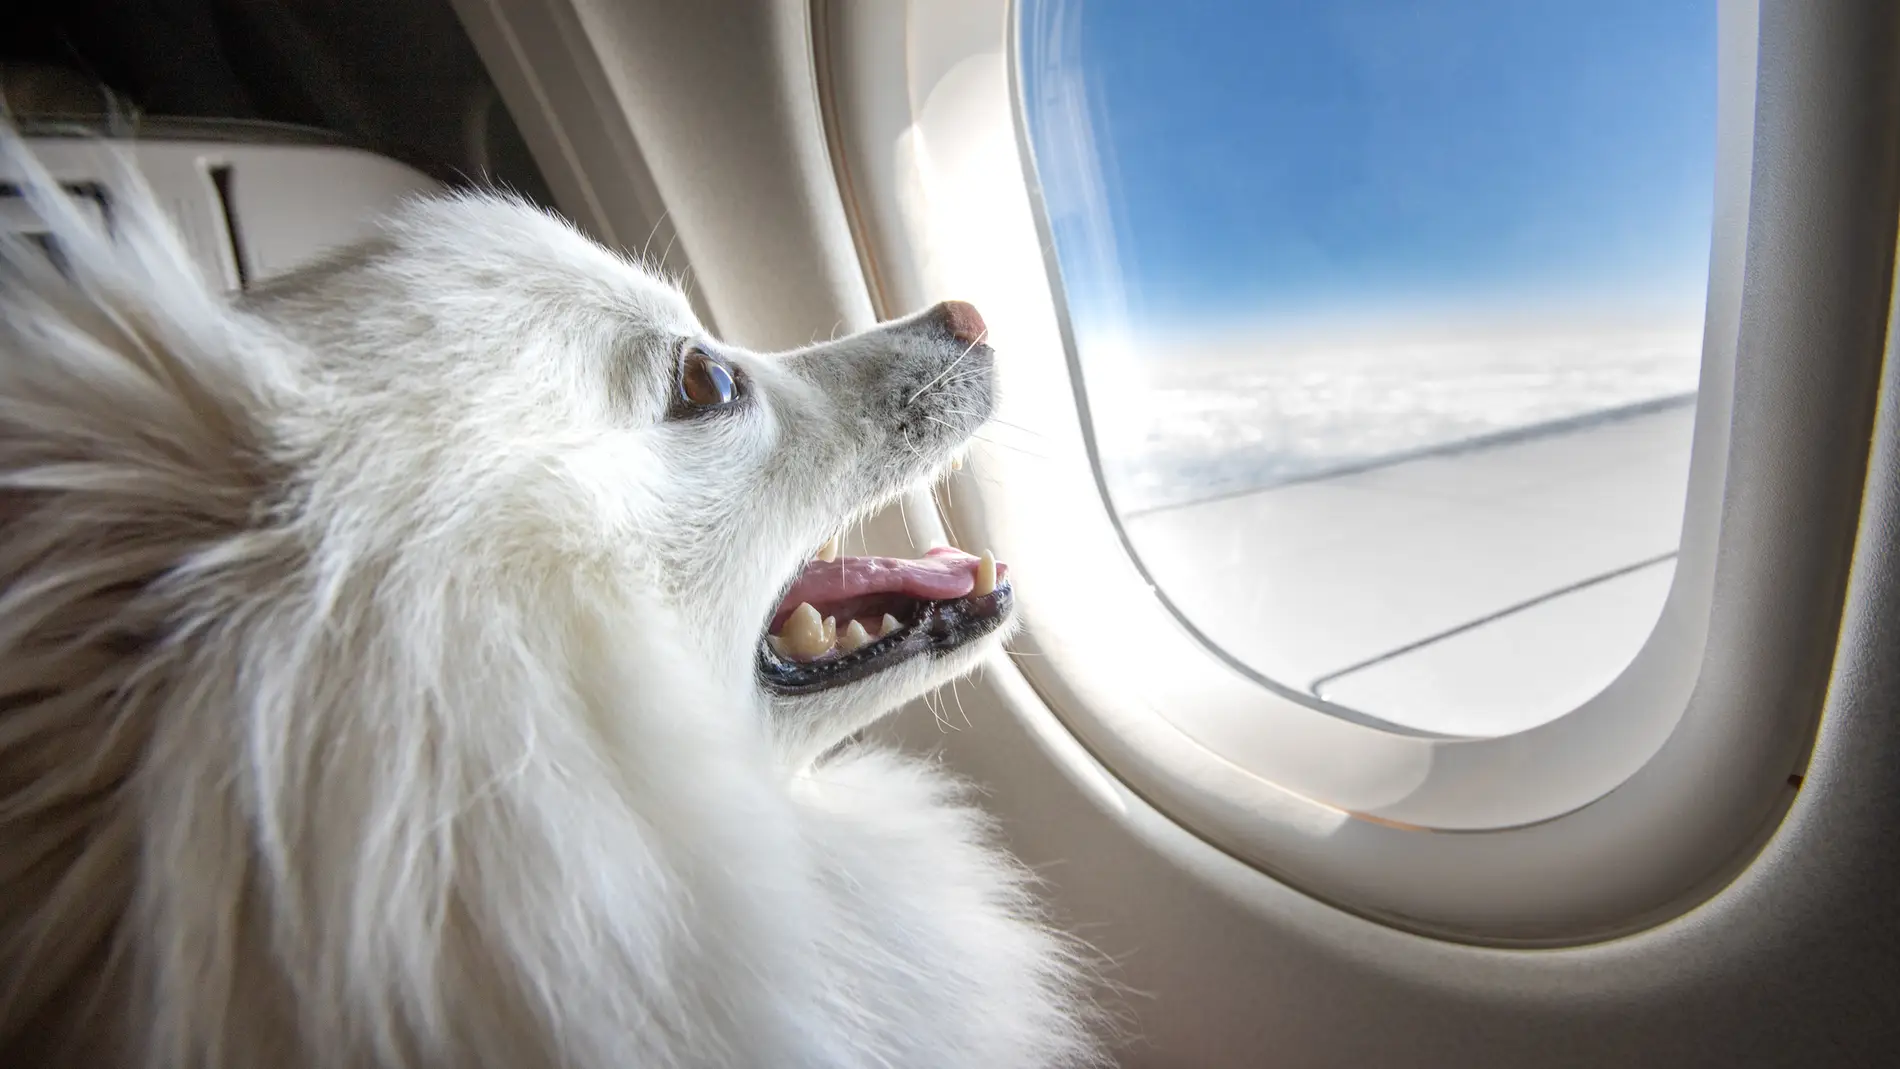 Requisitos de las aerolíneas viajar en avión con mascotas